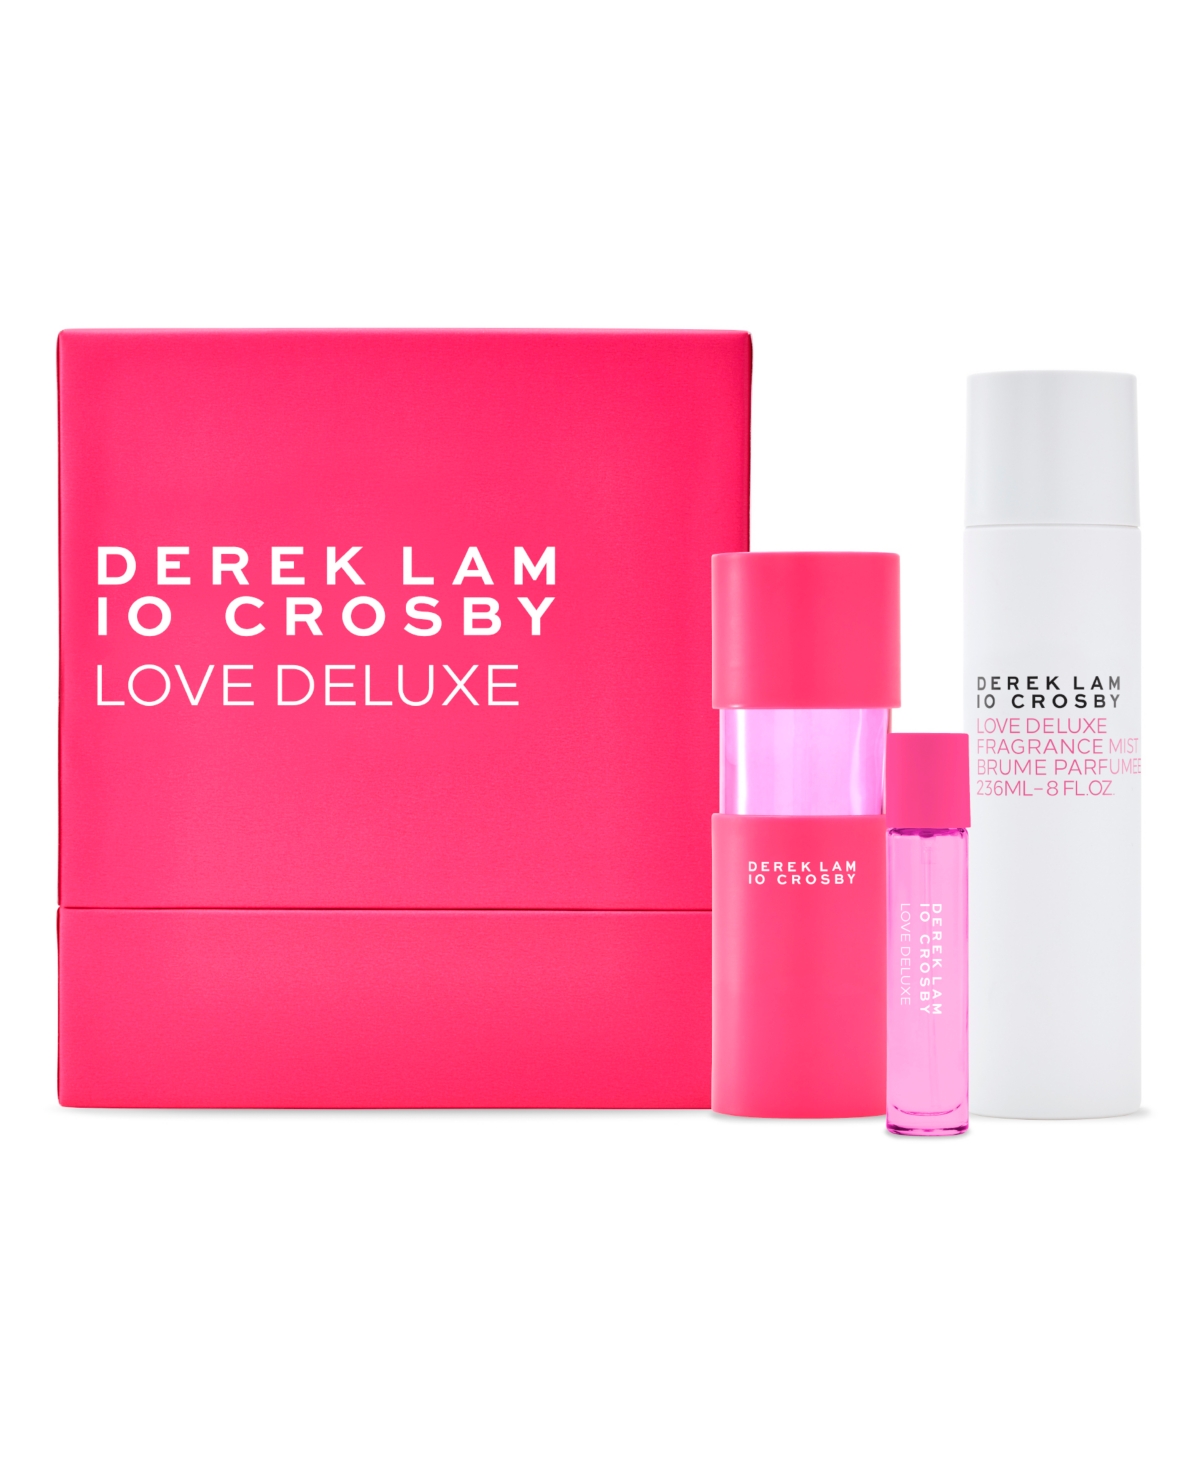 Derek Lam 10 Crosby Women's Love Deluxe 3 Piece Gift Set